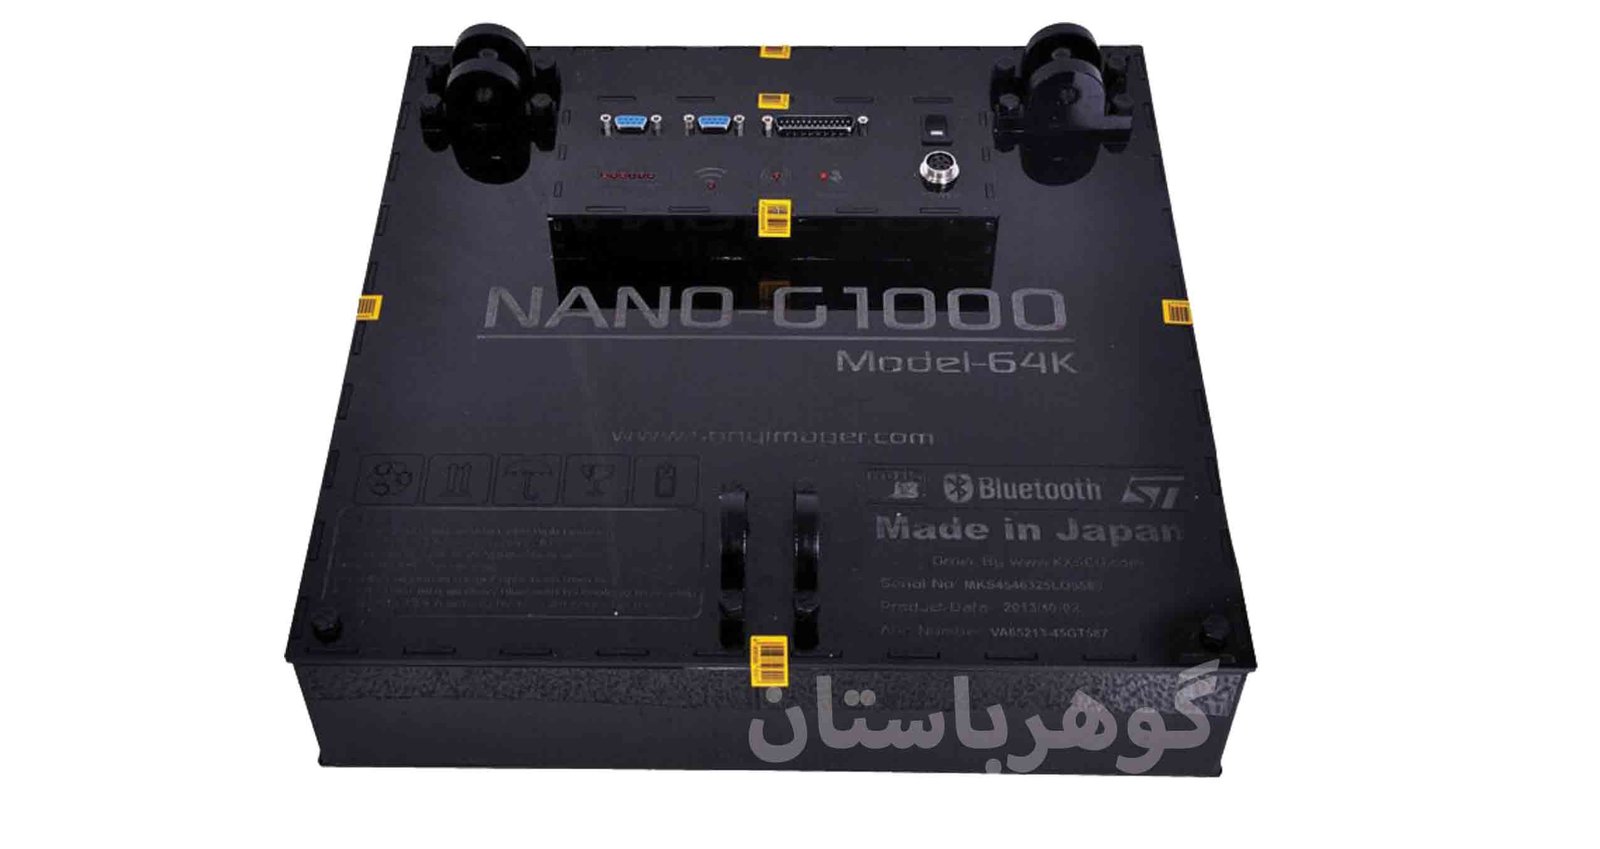  Nano G1000